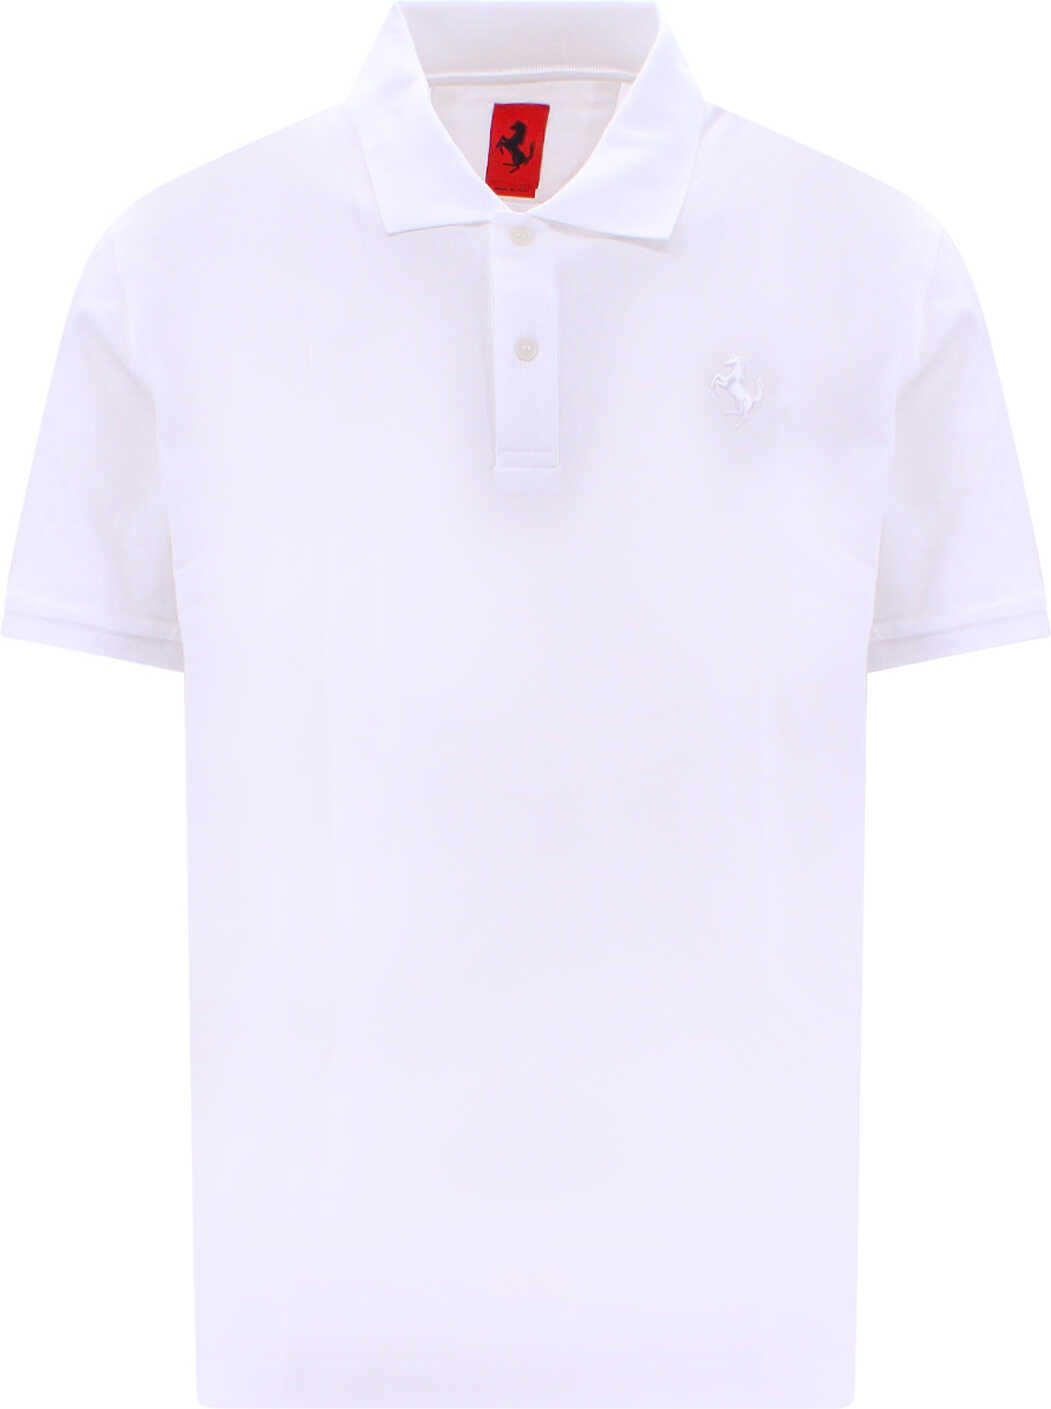 Ferrari Polo Shirt White